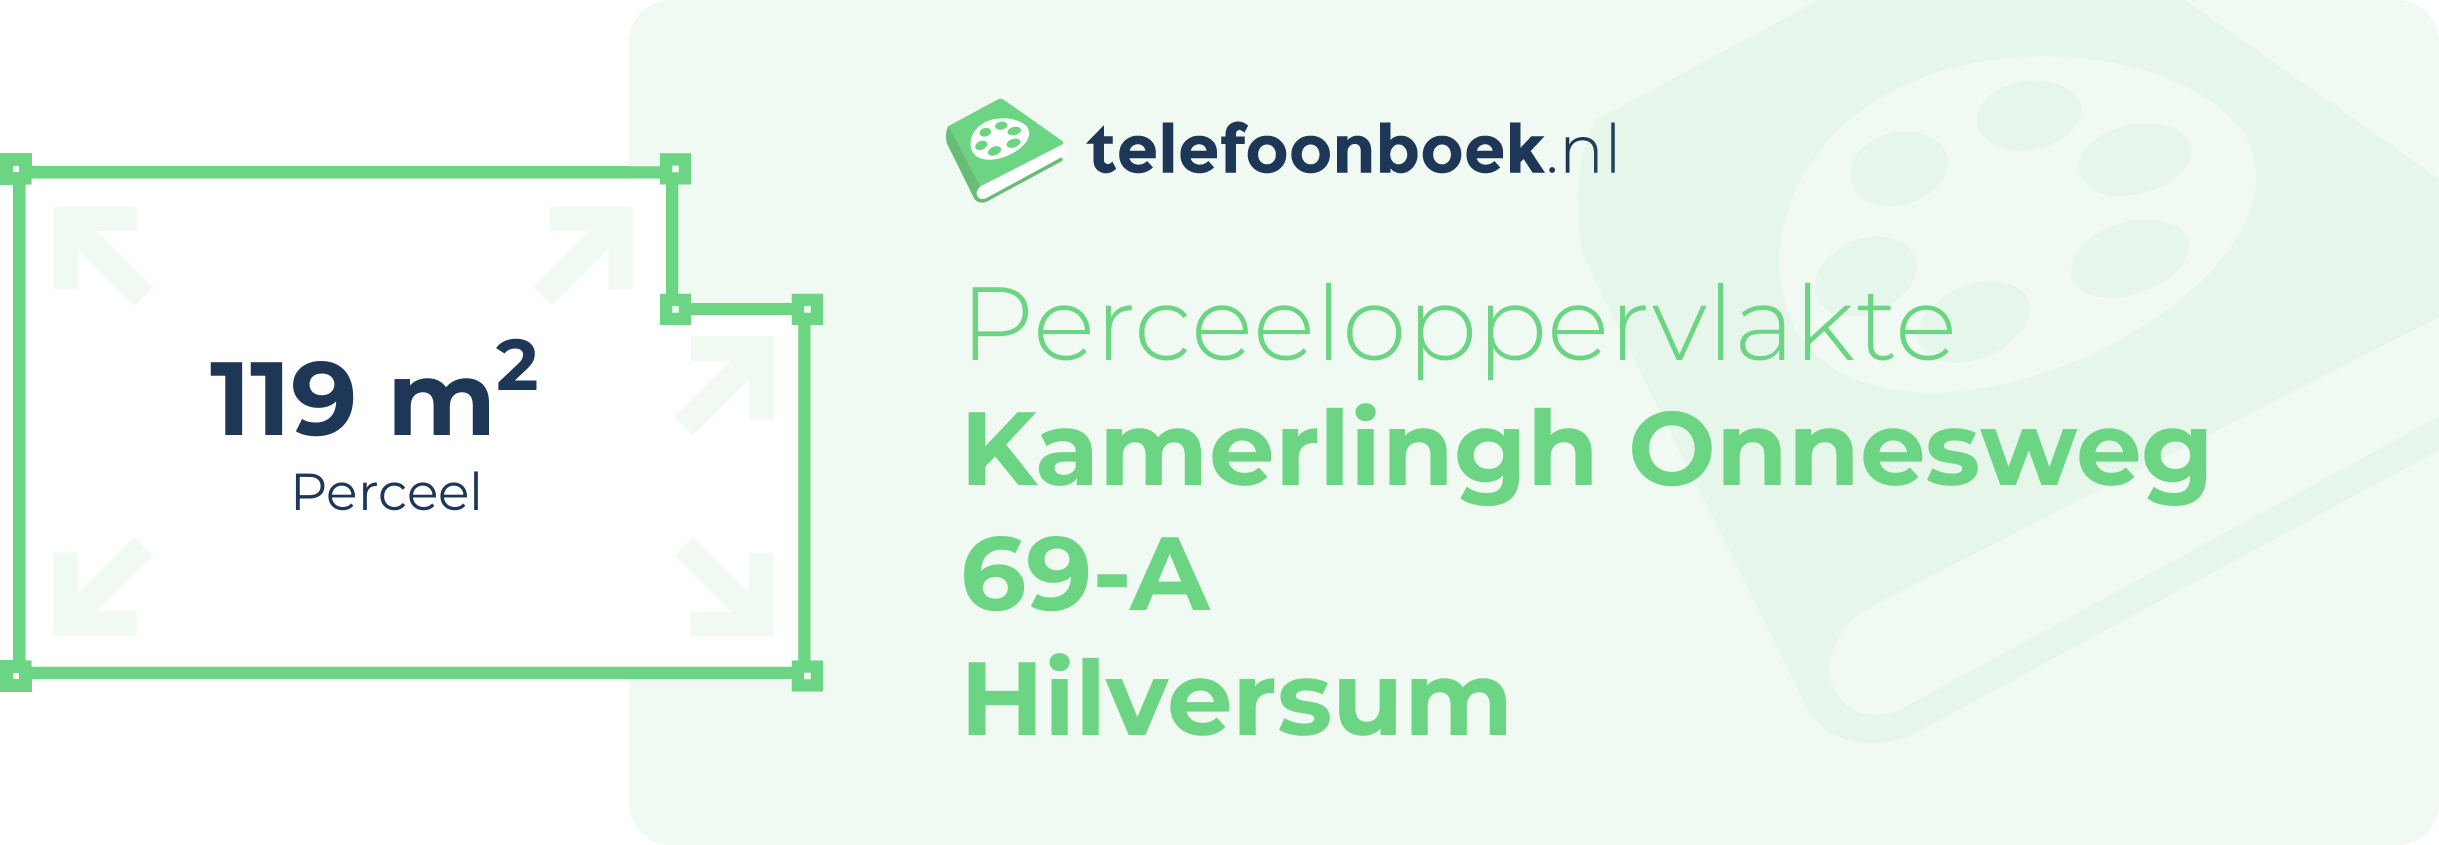 Perceeloppervlakte Kamerlingh Onnesweg 69-A Hilversum